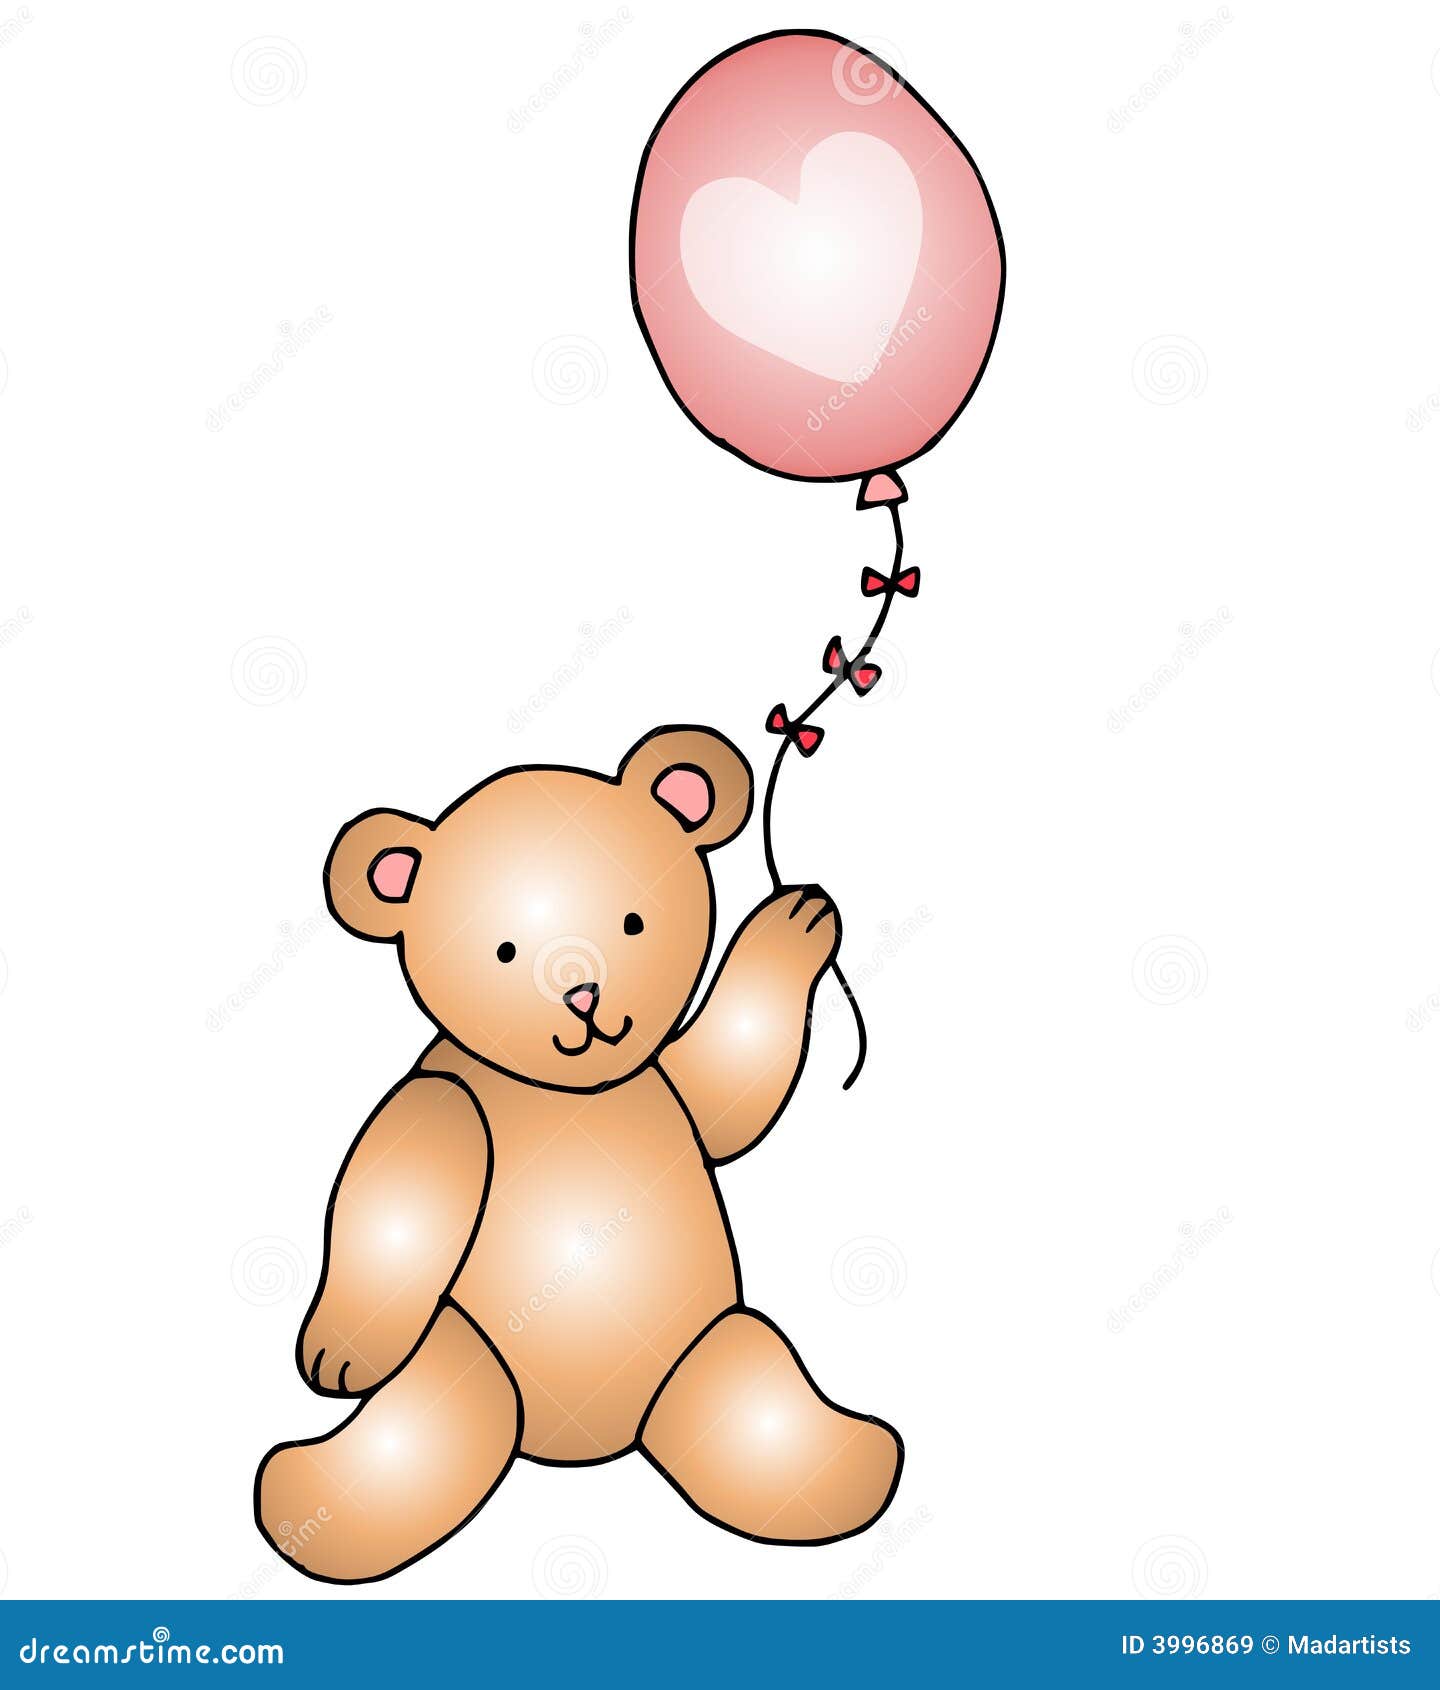 teddy bear holding heart clipart - photo #40